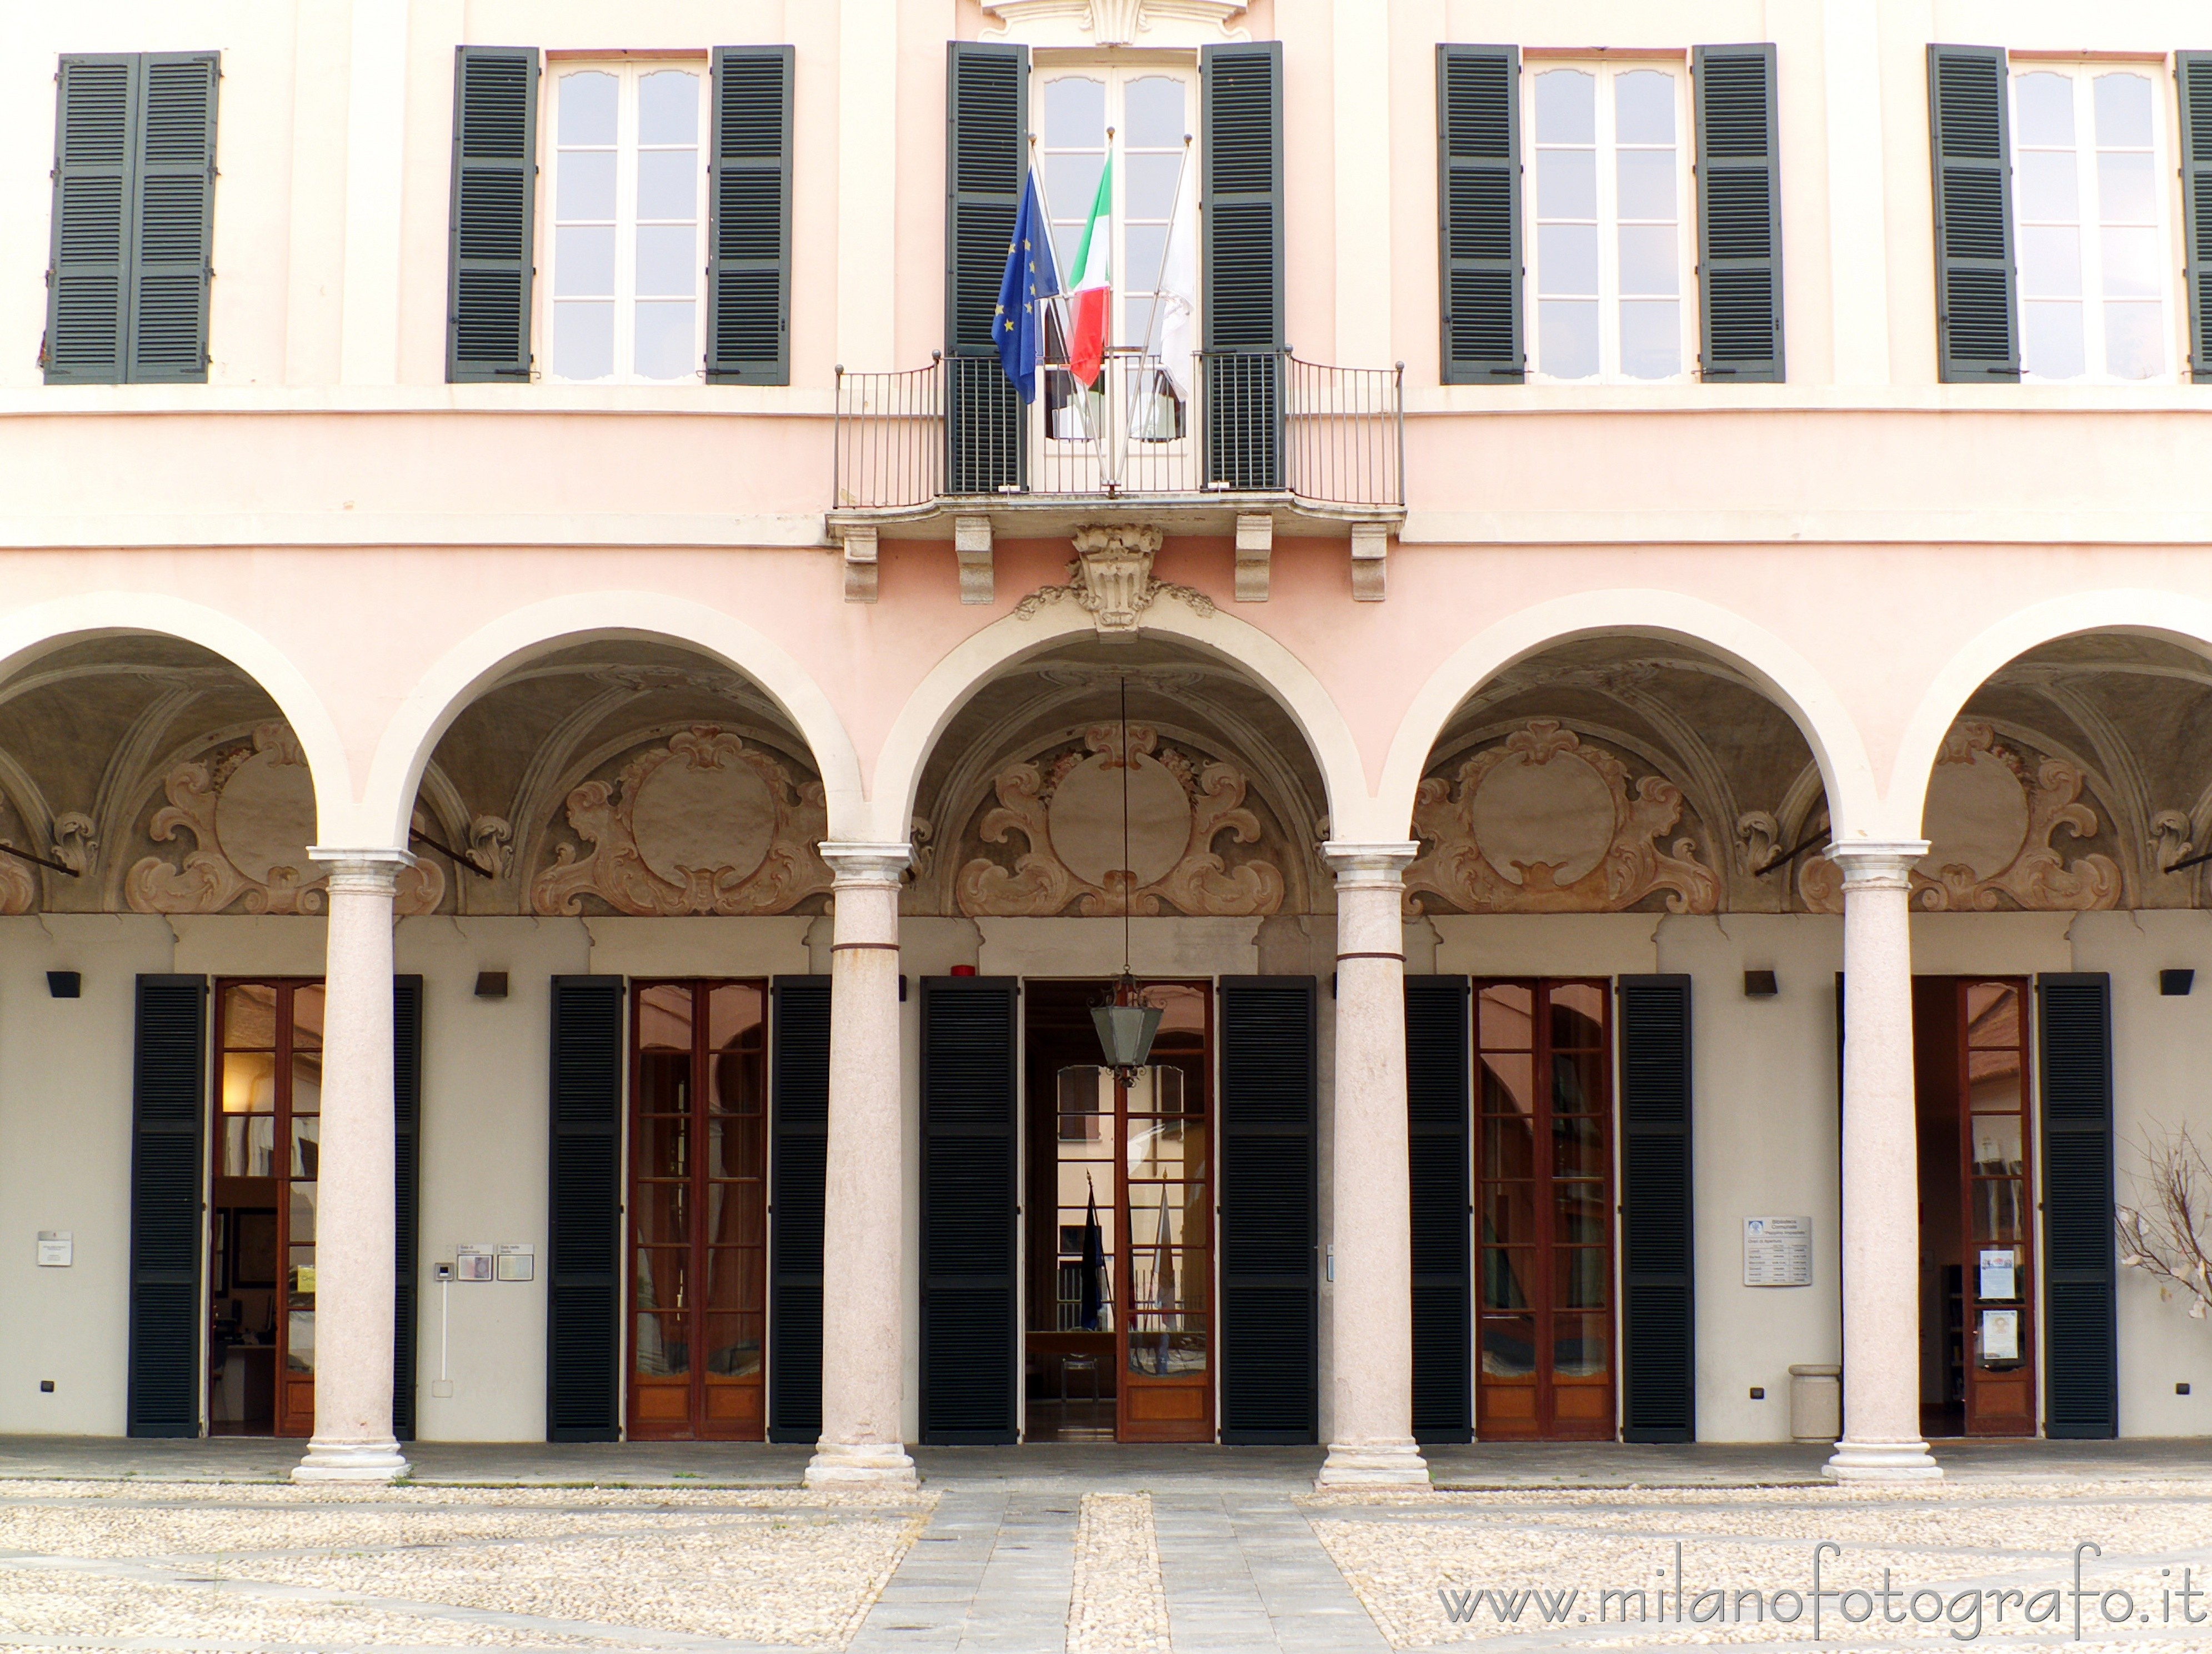 Cavenago di Brianza (Monza e Brianza): Facciata del blocco padronale di Palazzo Rasini - Cavenago di Brianza (Monza e Brianza)